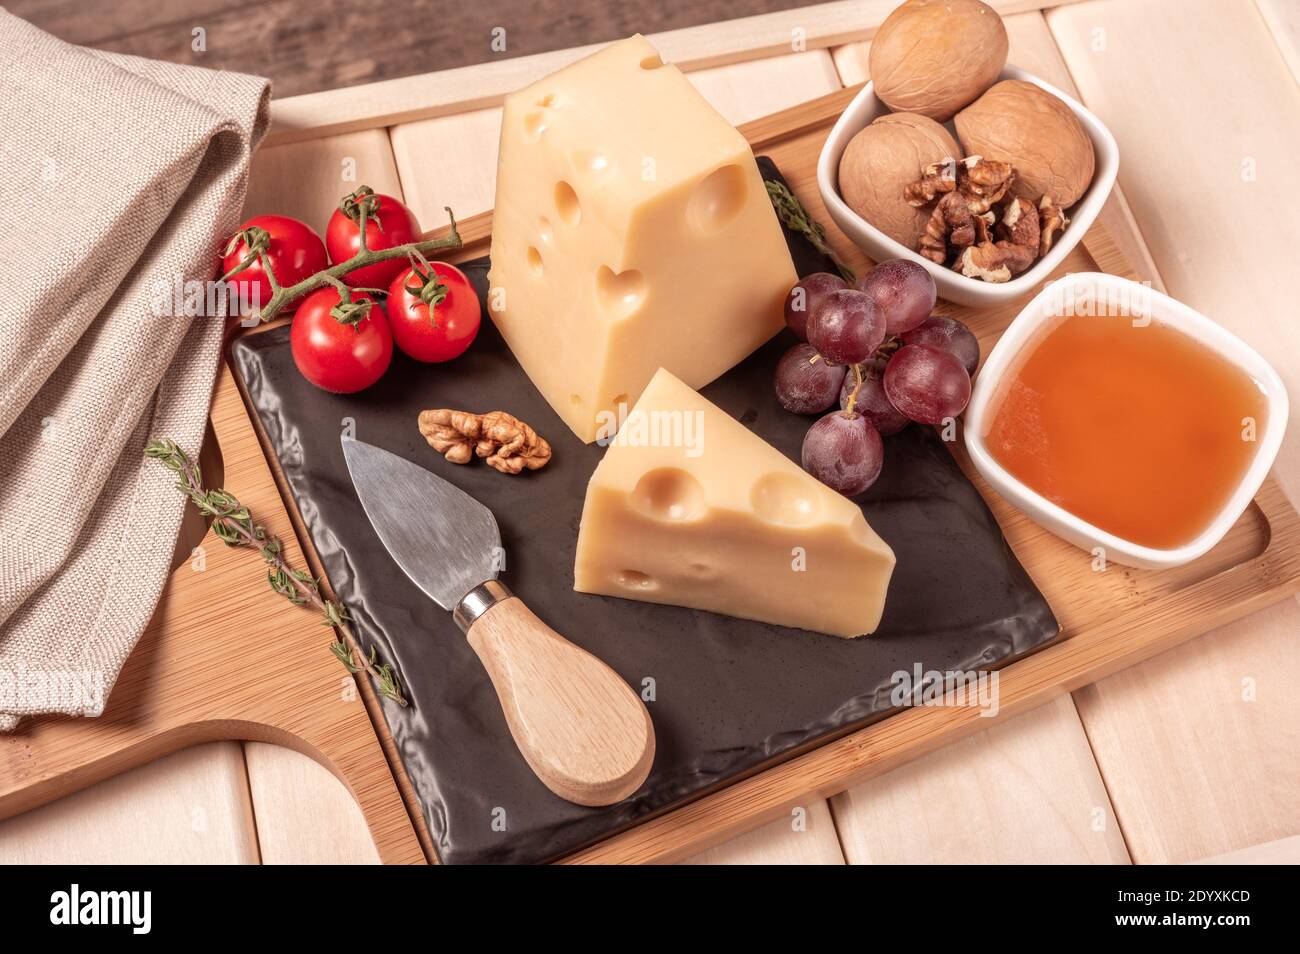 Käse maasdam mit Nüssen, Honig, Trauben und Tomaten auf Holzbrett und Tablett. Käse Dessert. Getöntes Bild Stockfoto